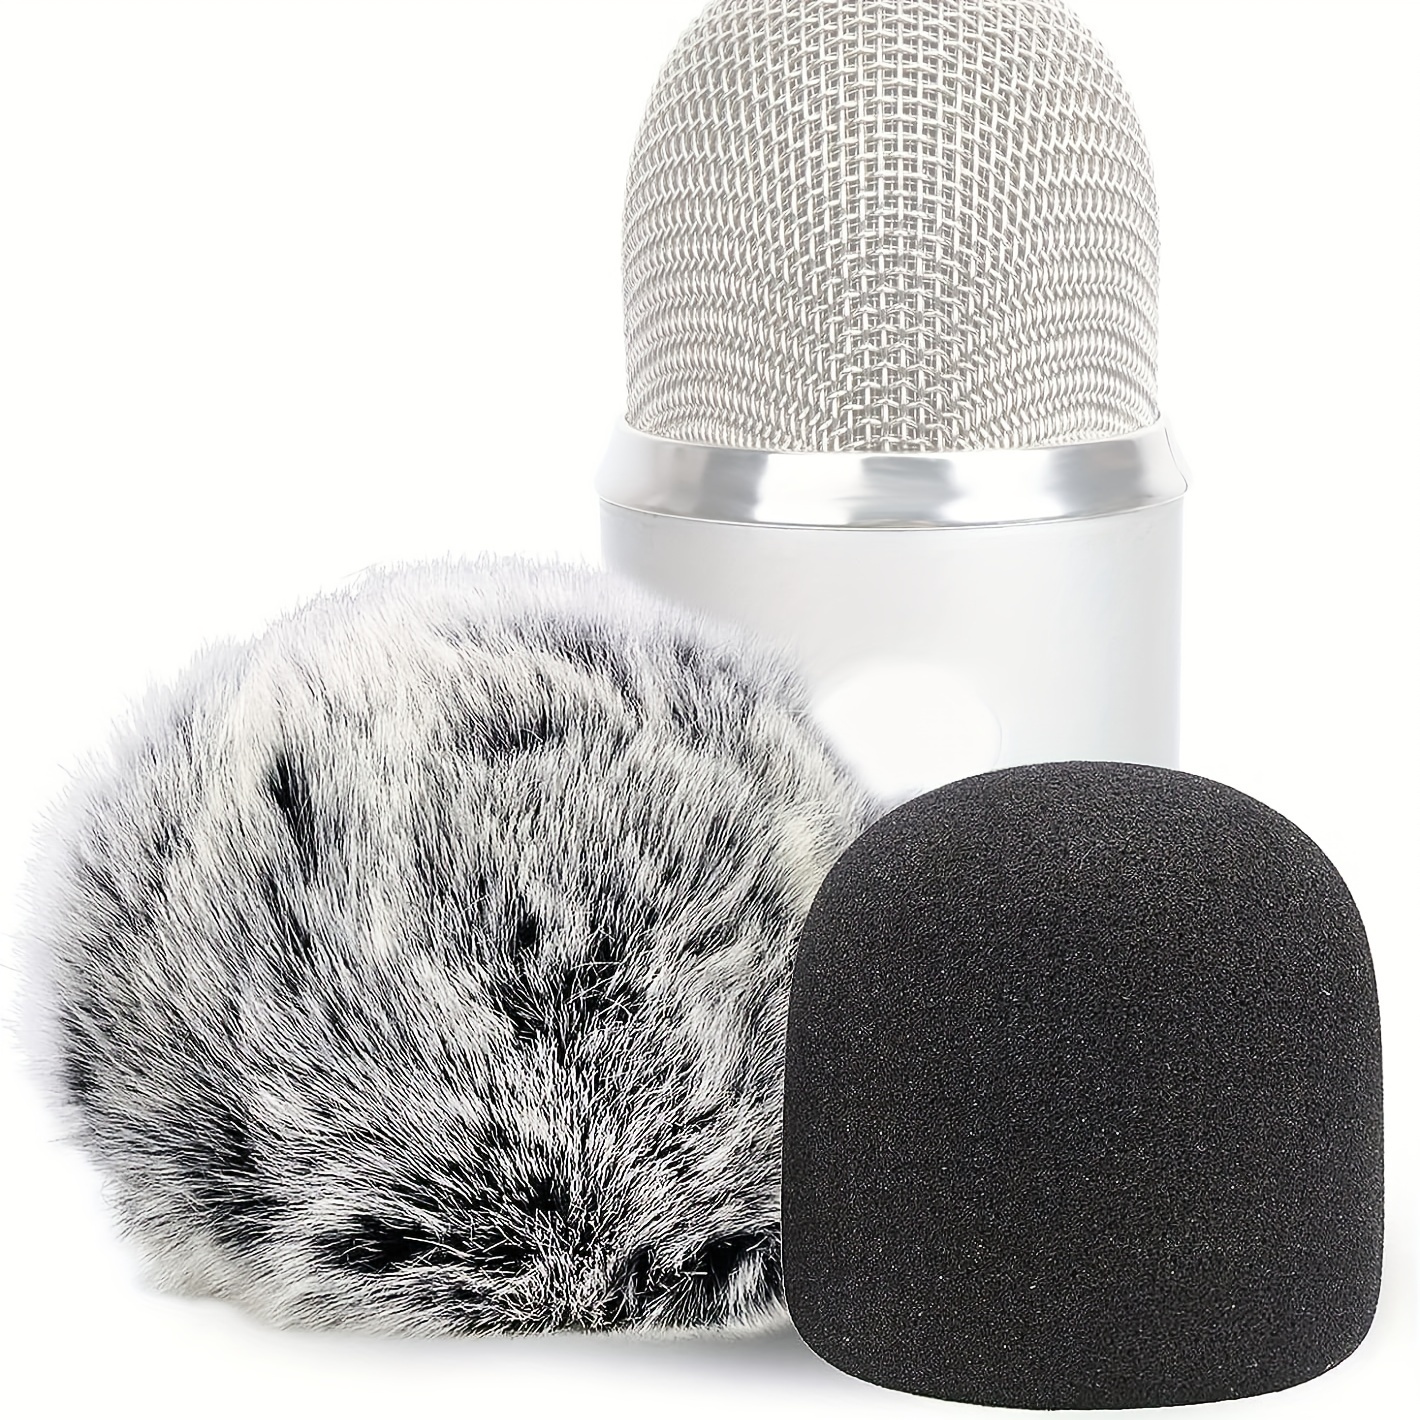 Blue Yeti Microphone Foam Cover, Foam Microphone Windscreen